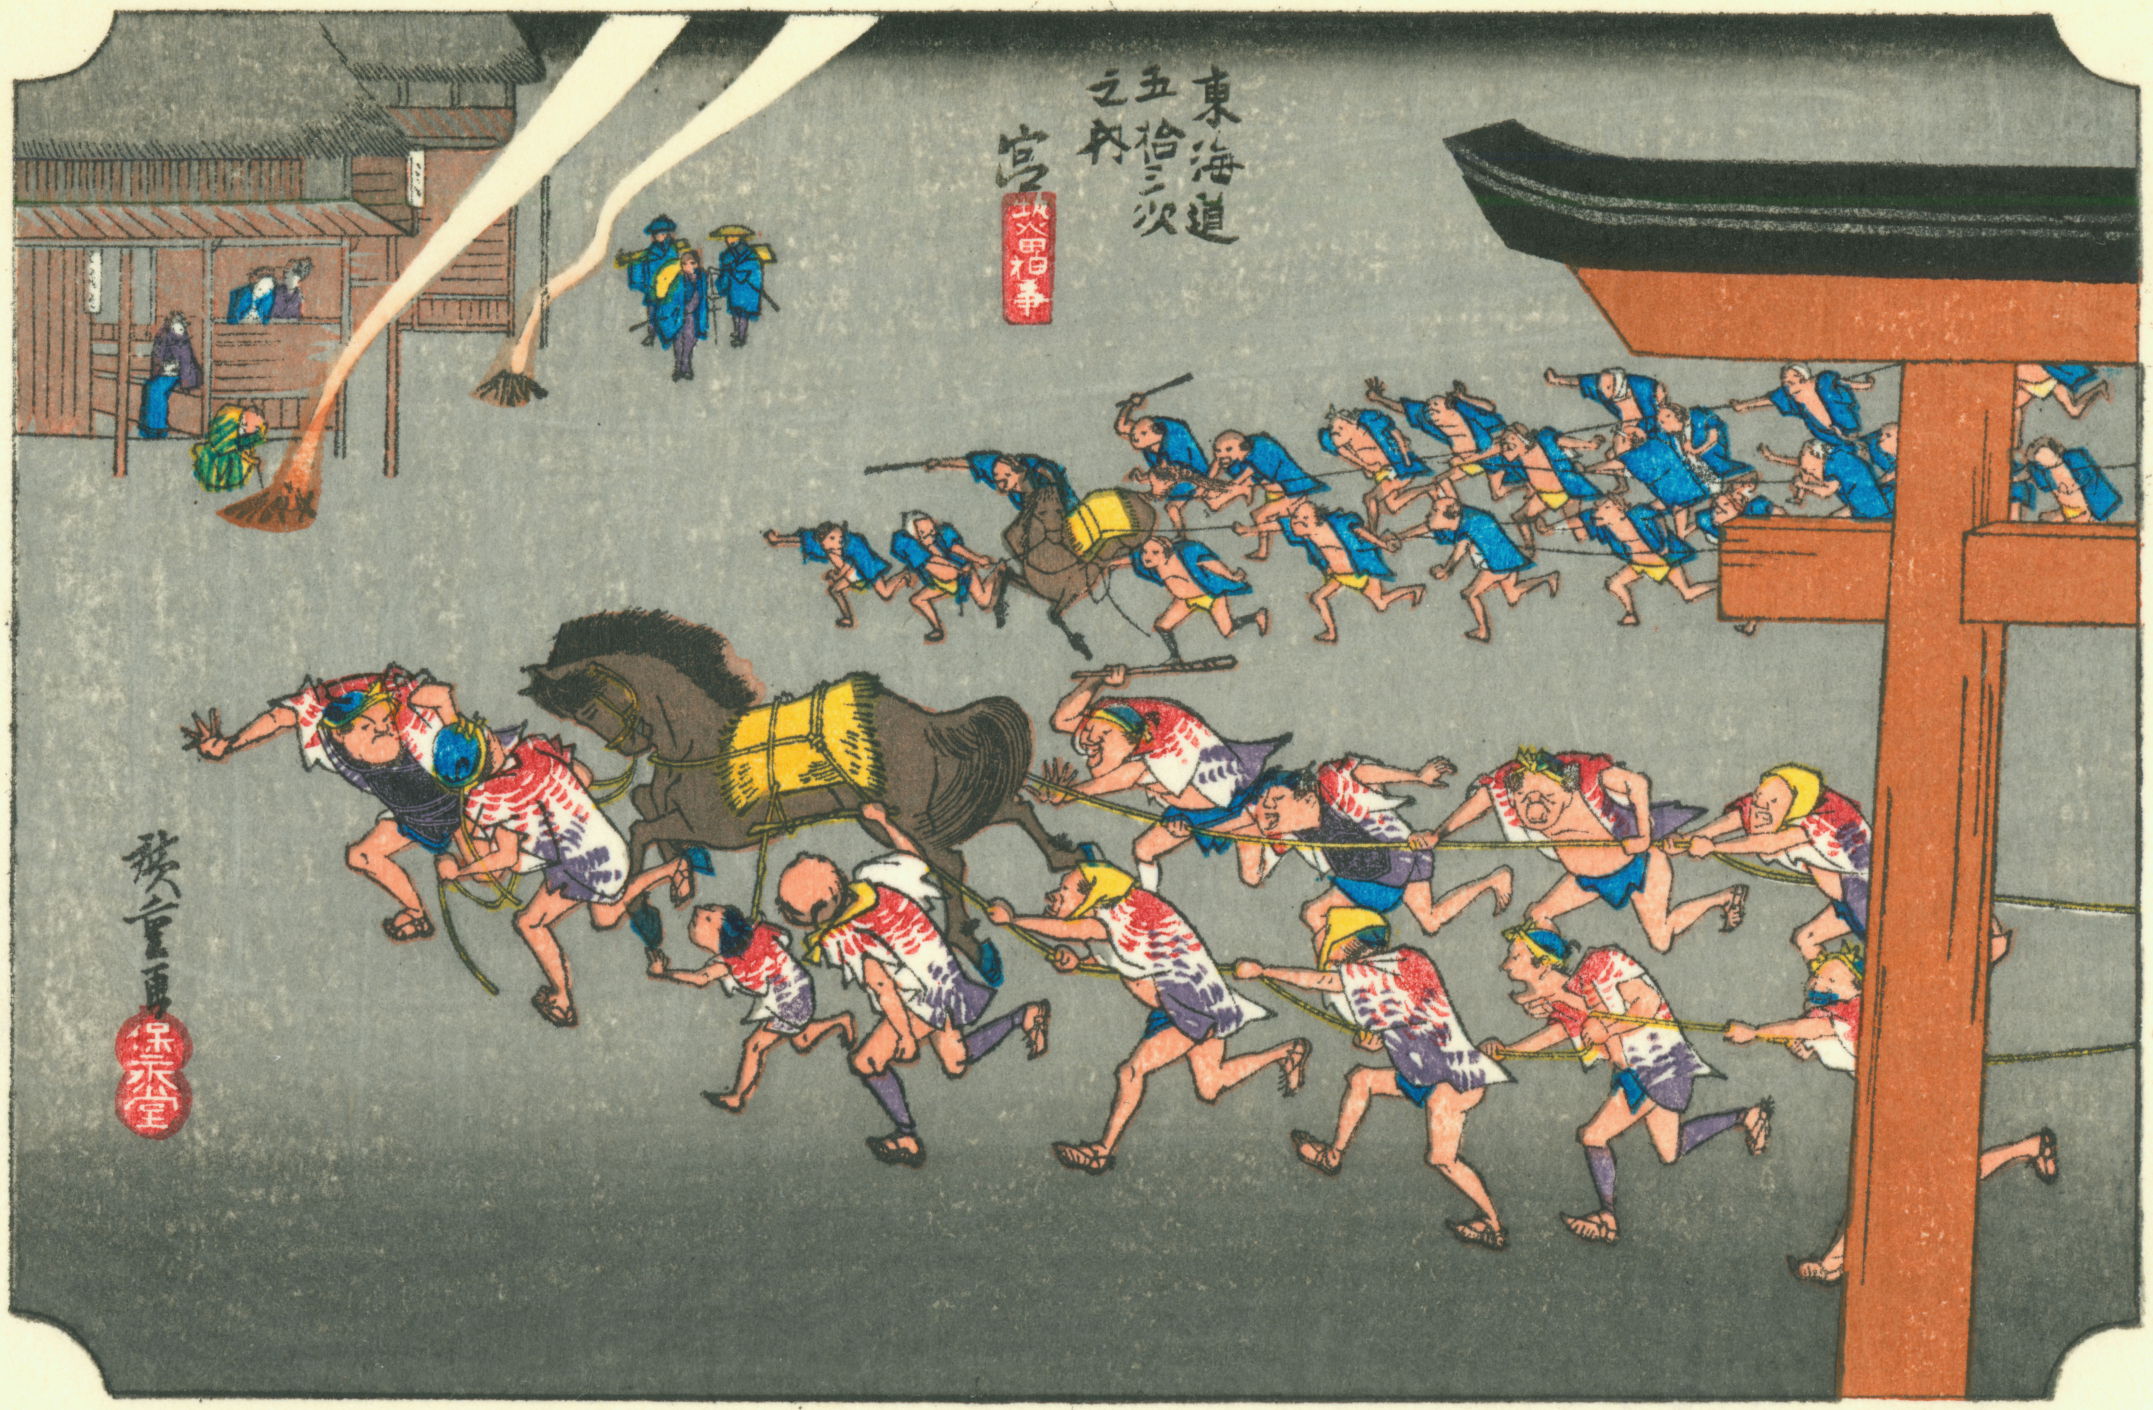 ファイル:Hiroshige42 miya.jpg - Wikipedia